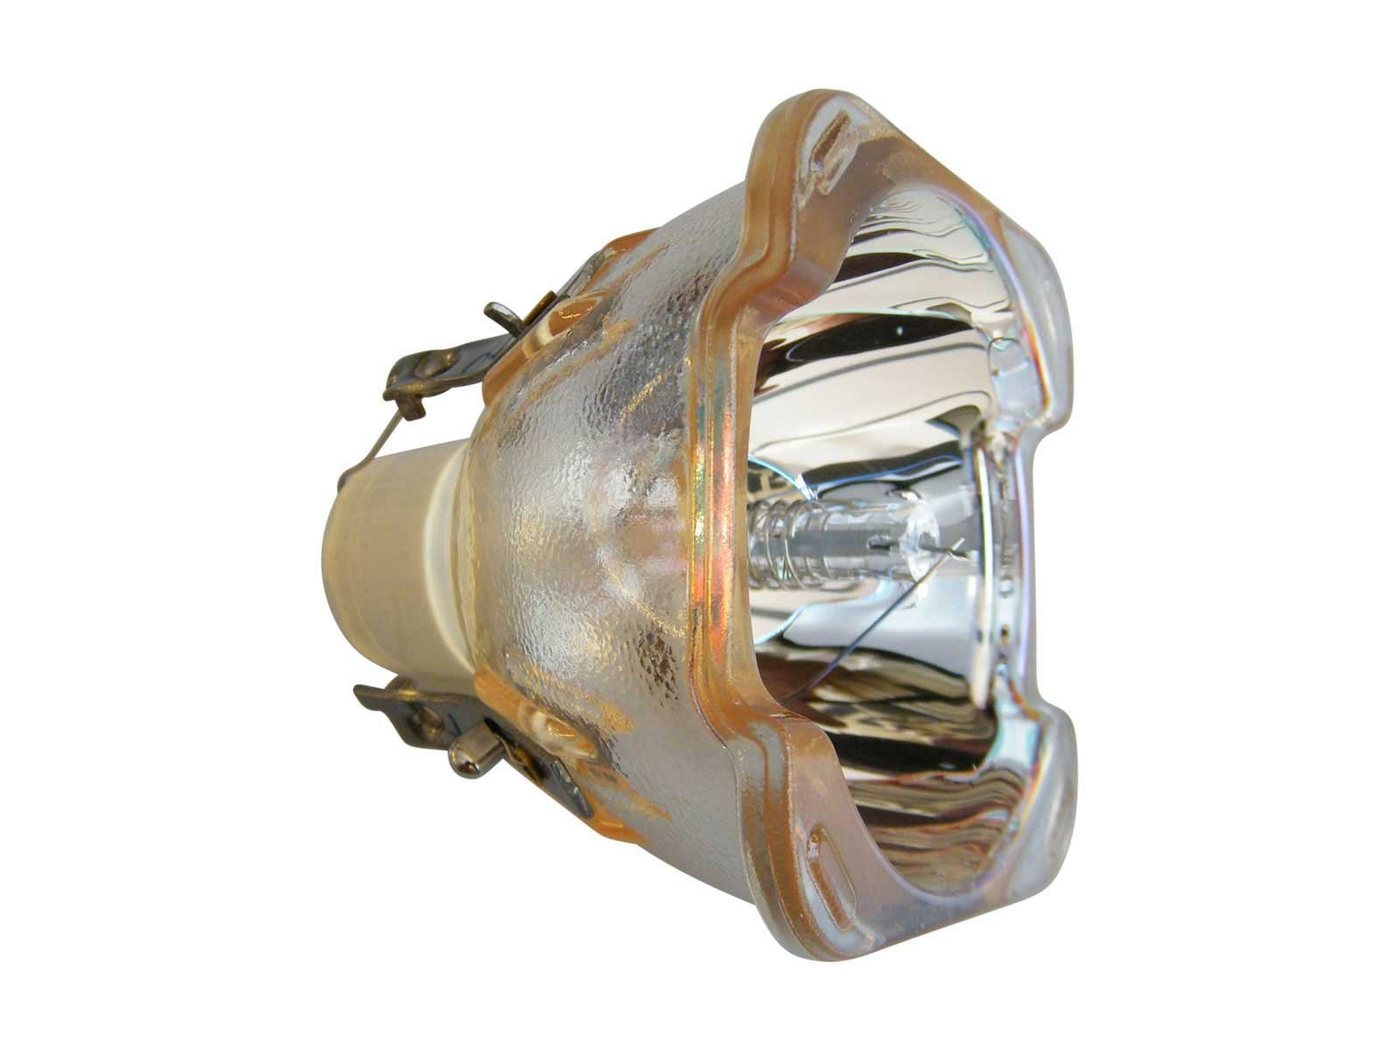 azurano Beamerlampe, 1-St., für PROJECTIONDESIGN 400-0401-00 R9801270, preiswert, umwelt- & ressourcenschonend von azurano